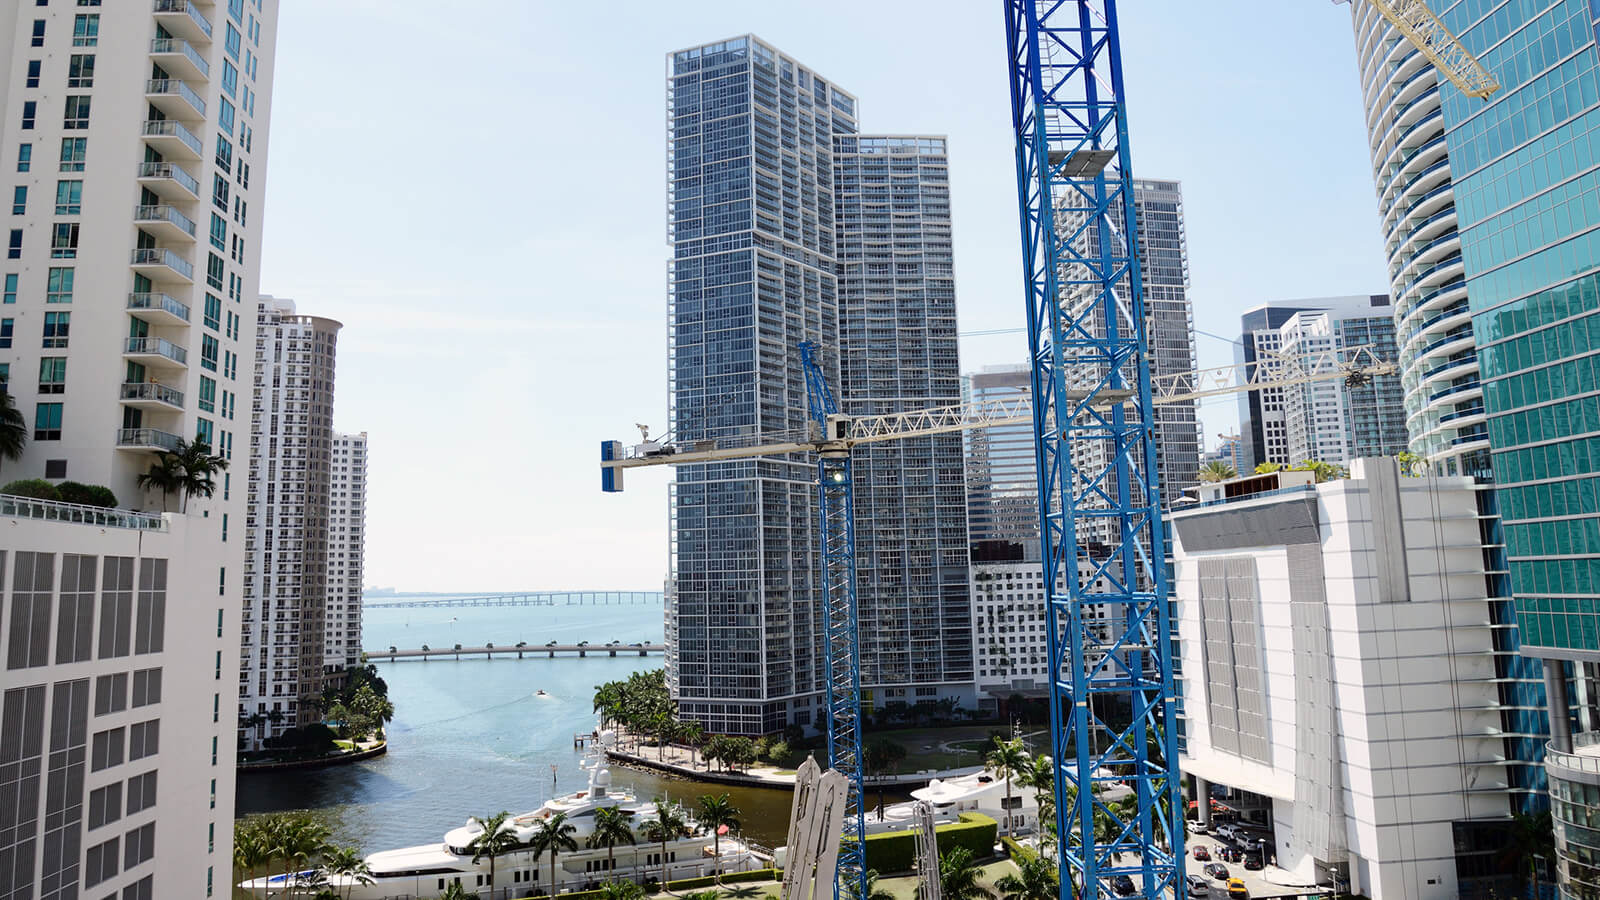 Miami Building Construction